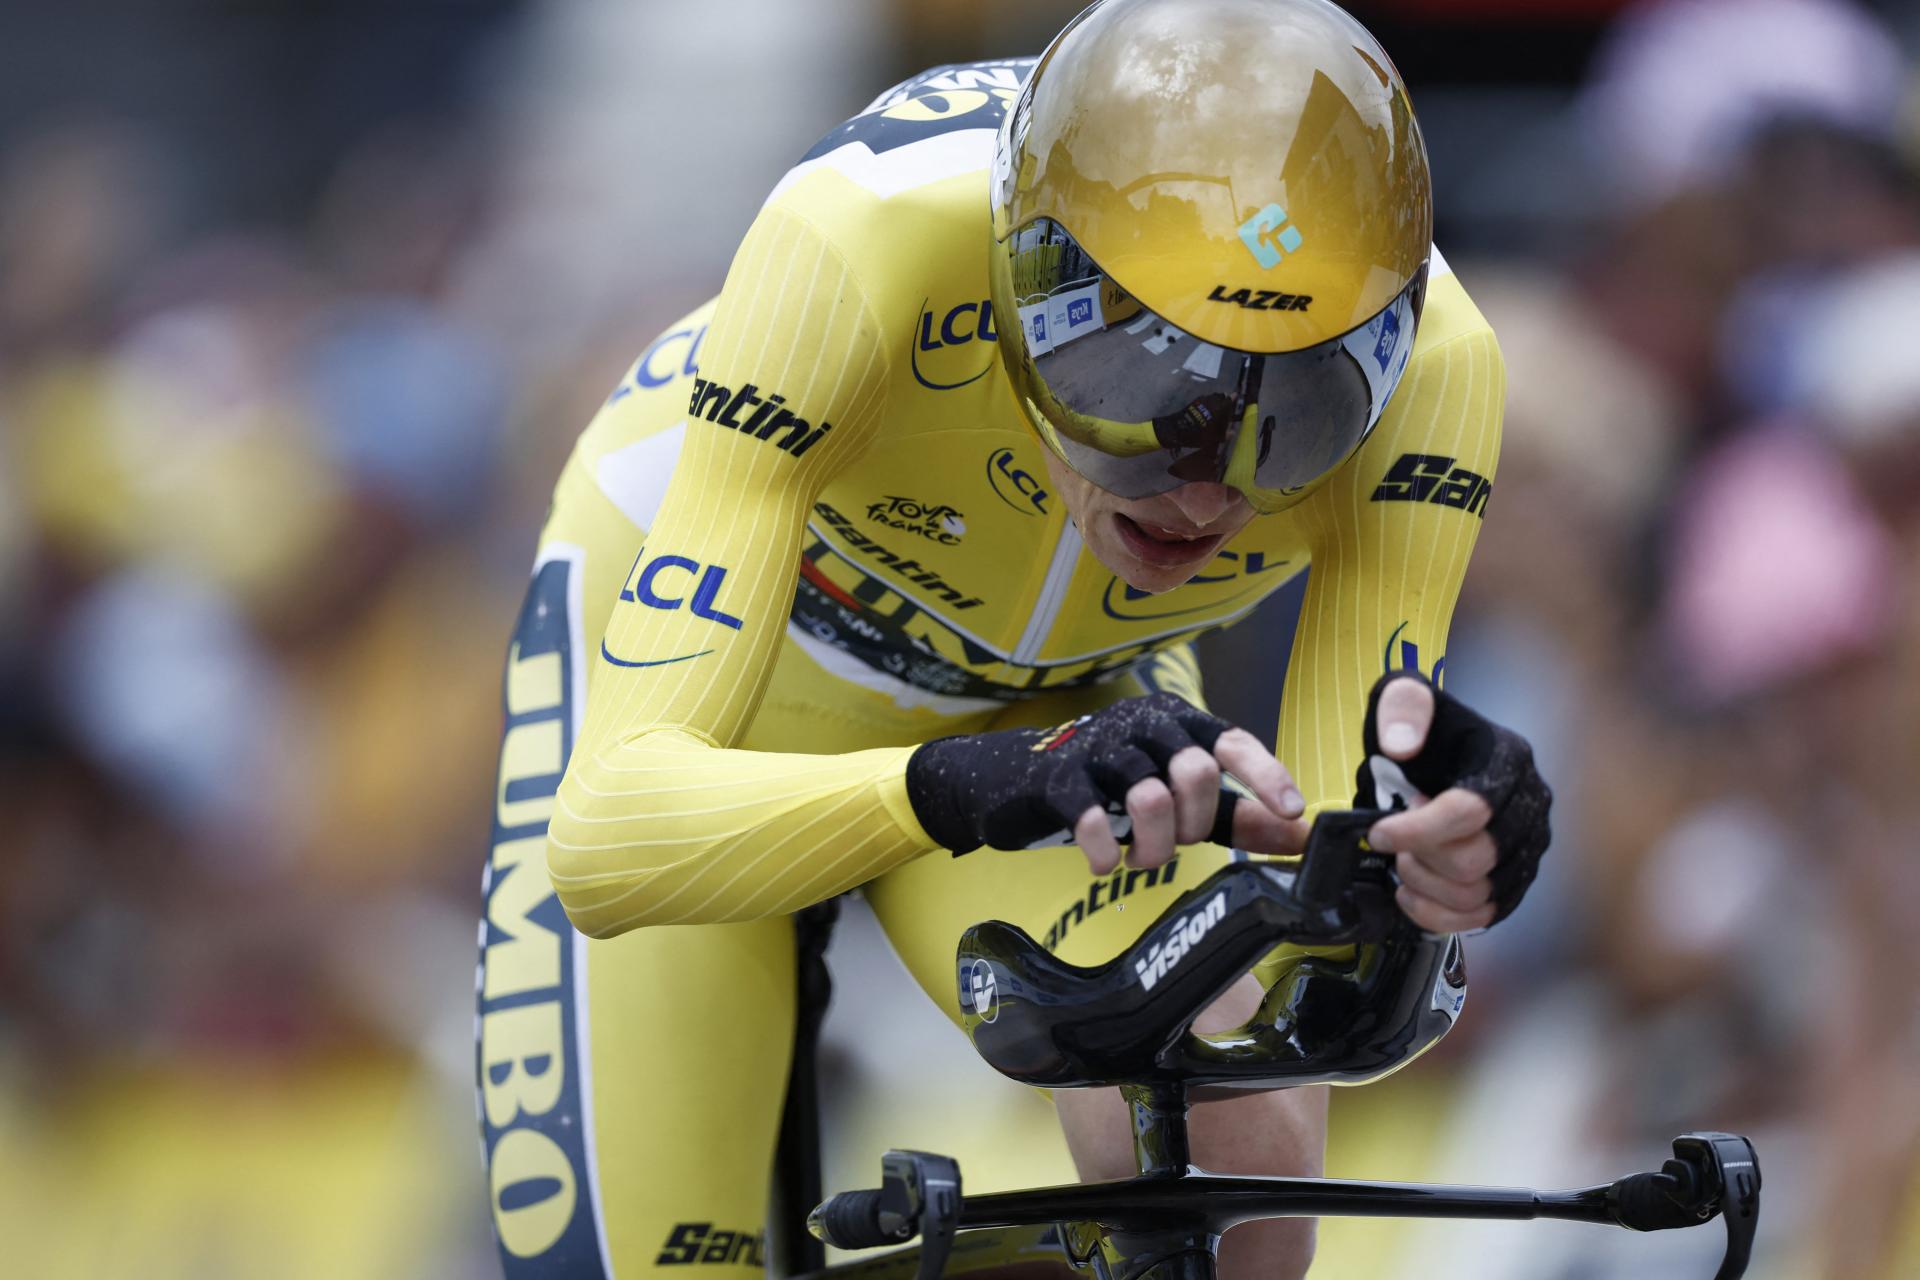 Dánsky cyklista Vingegaard triumfoval v časovke na Tour de France. Zvýšil náskok na čele